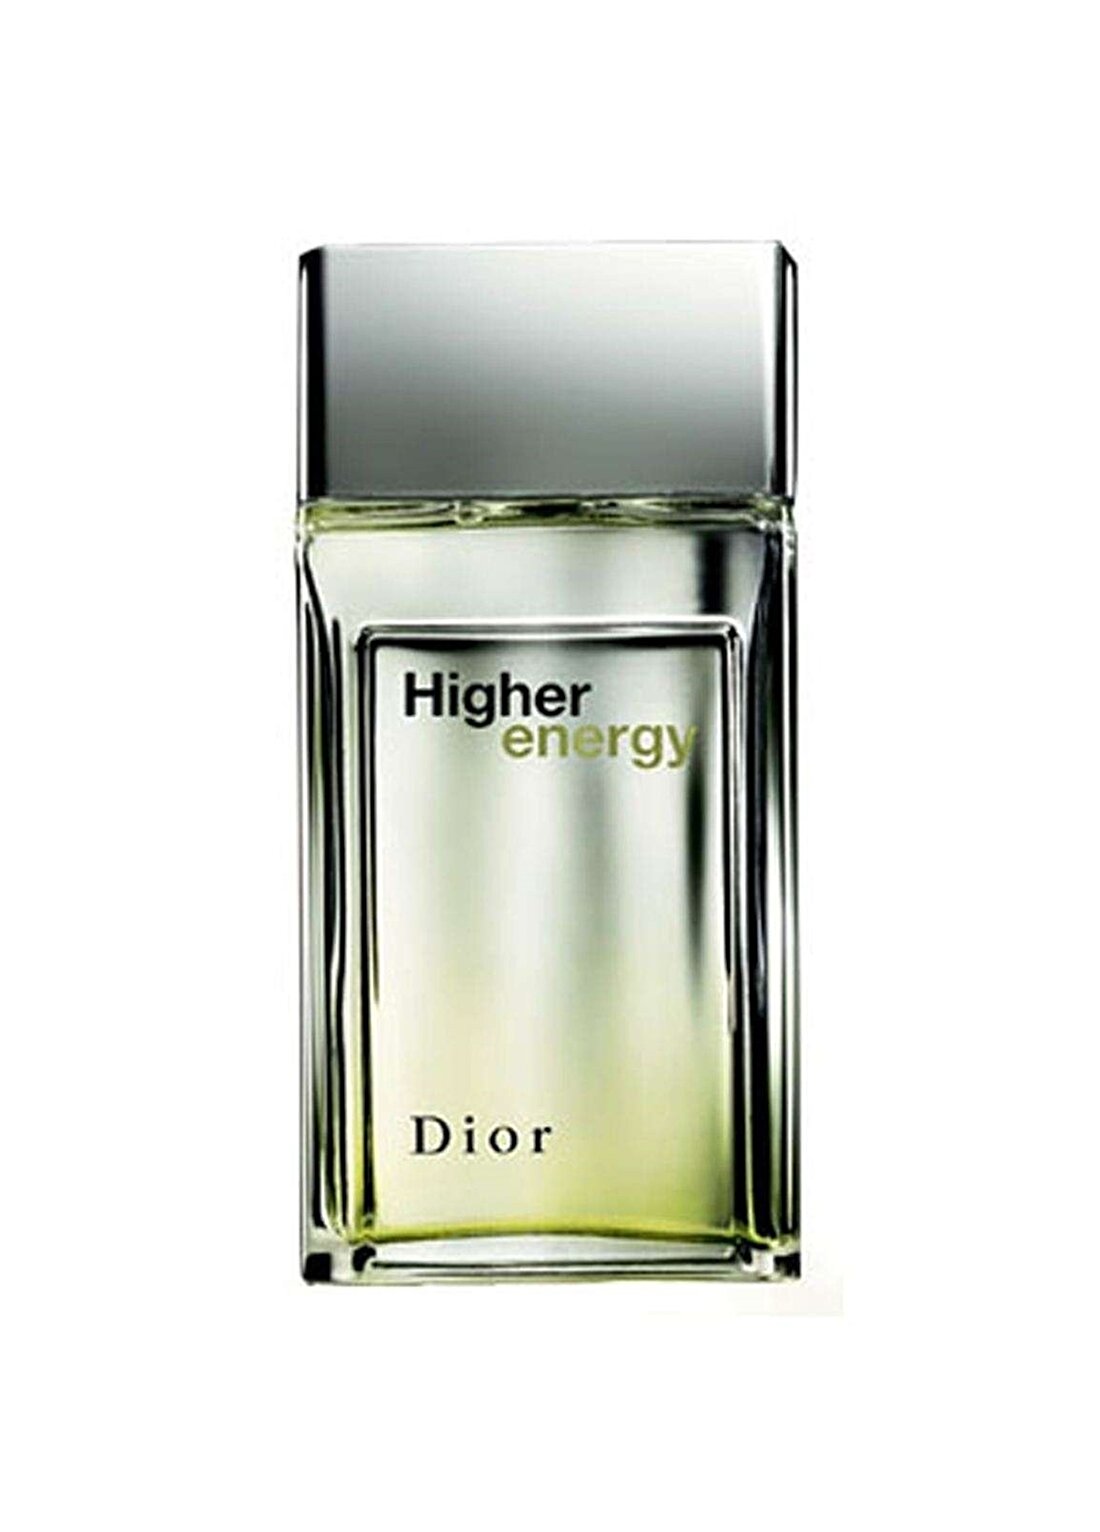 Dior Higher Energy Edt 100 Ml Erkek Parfüm